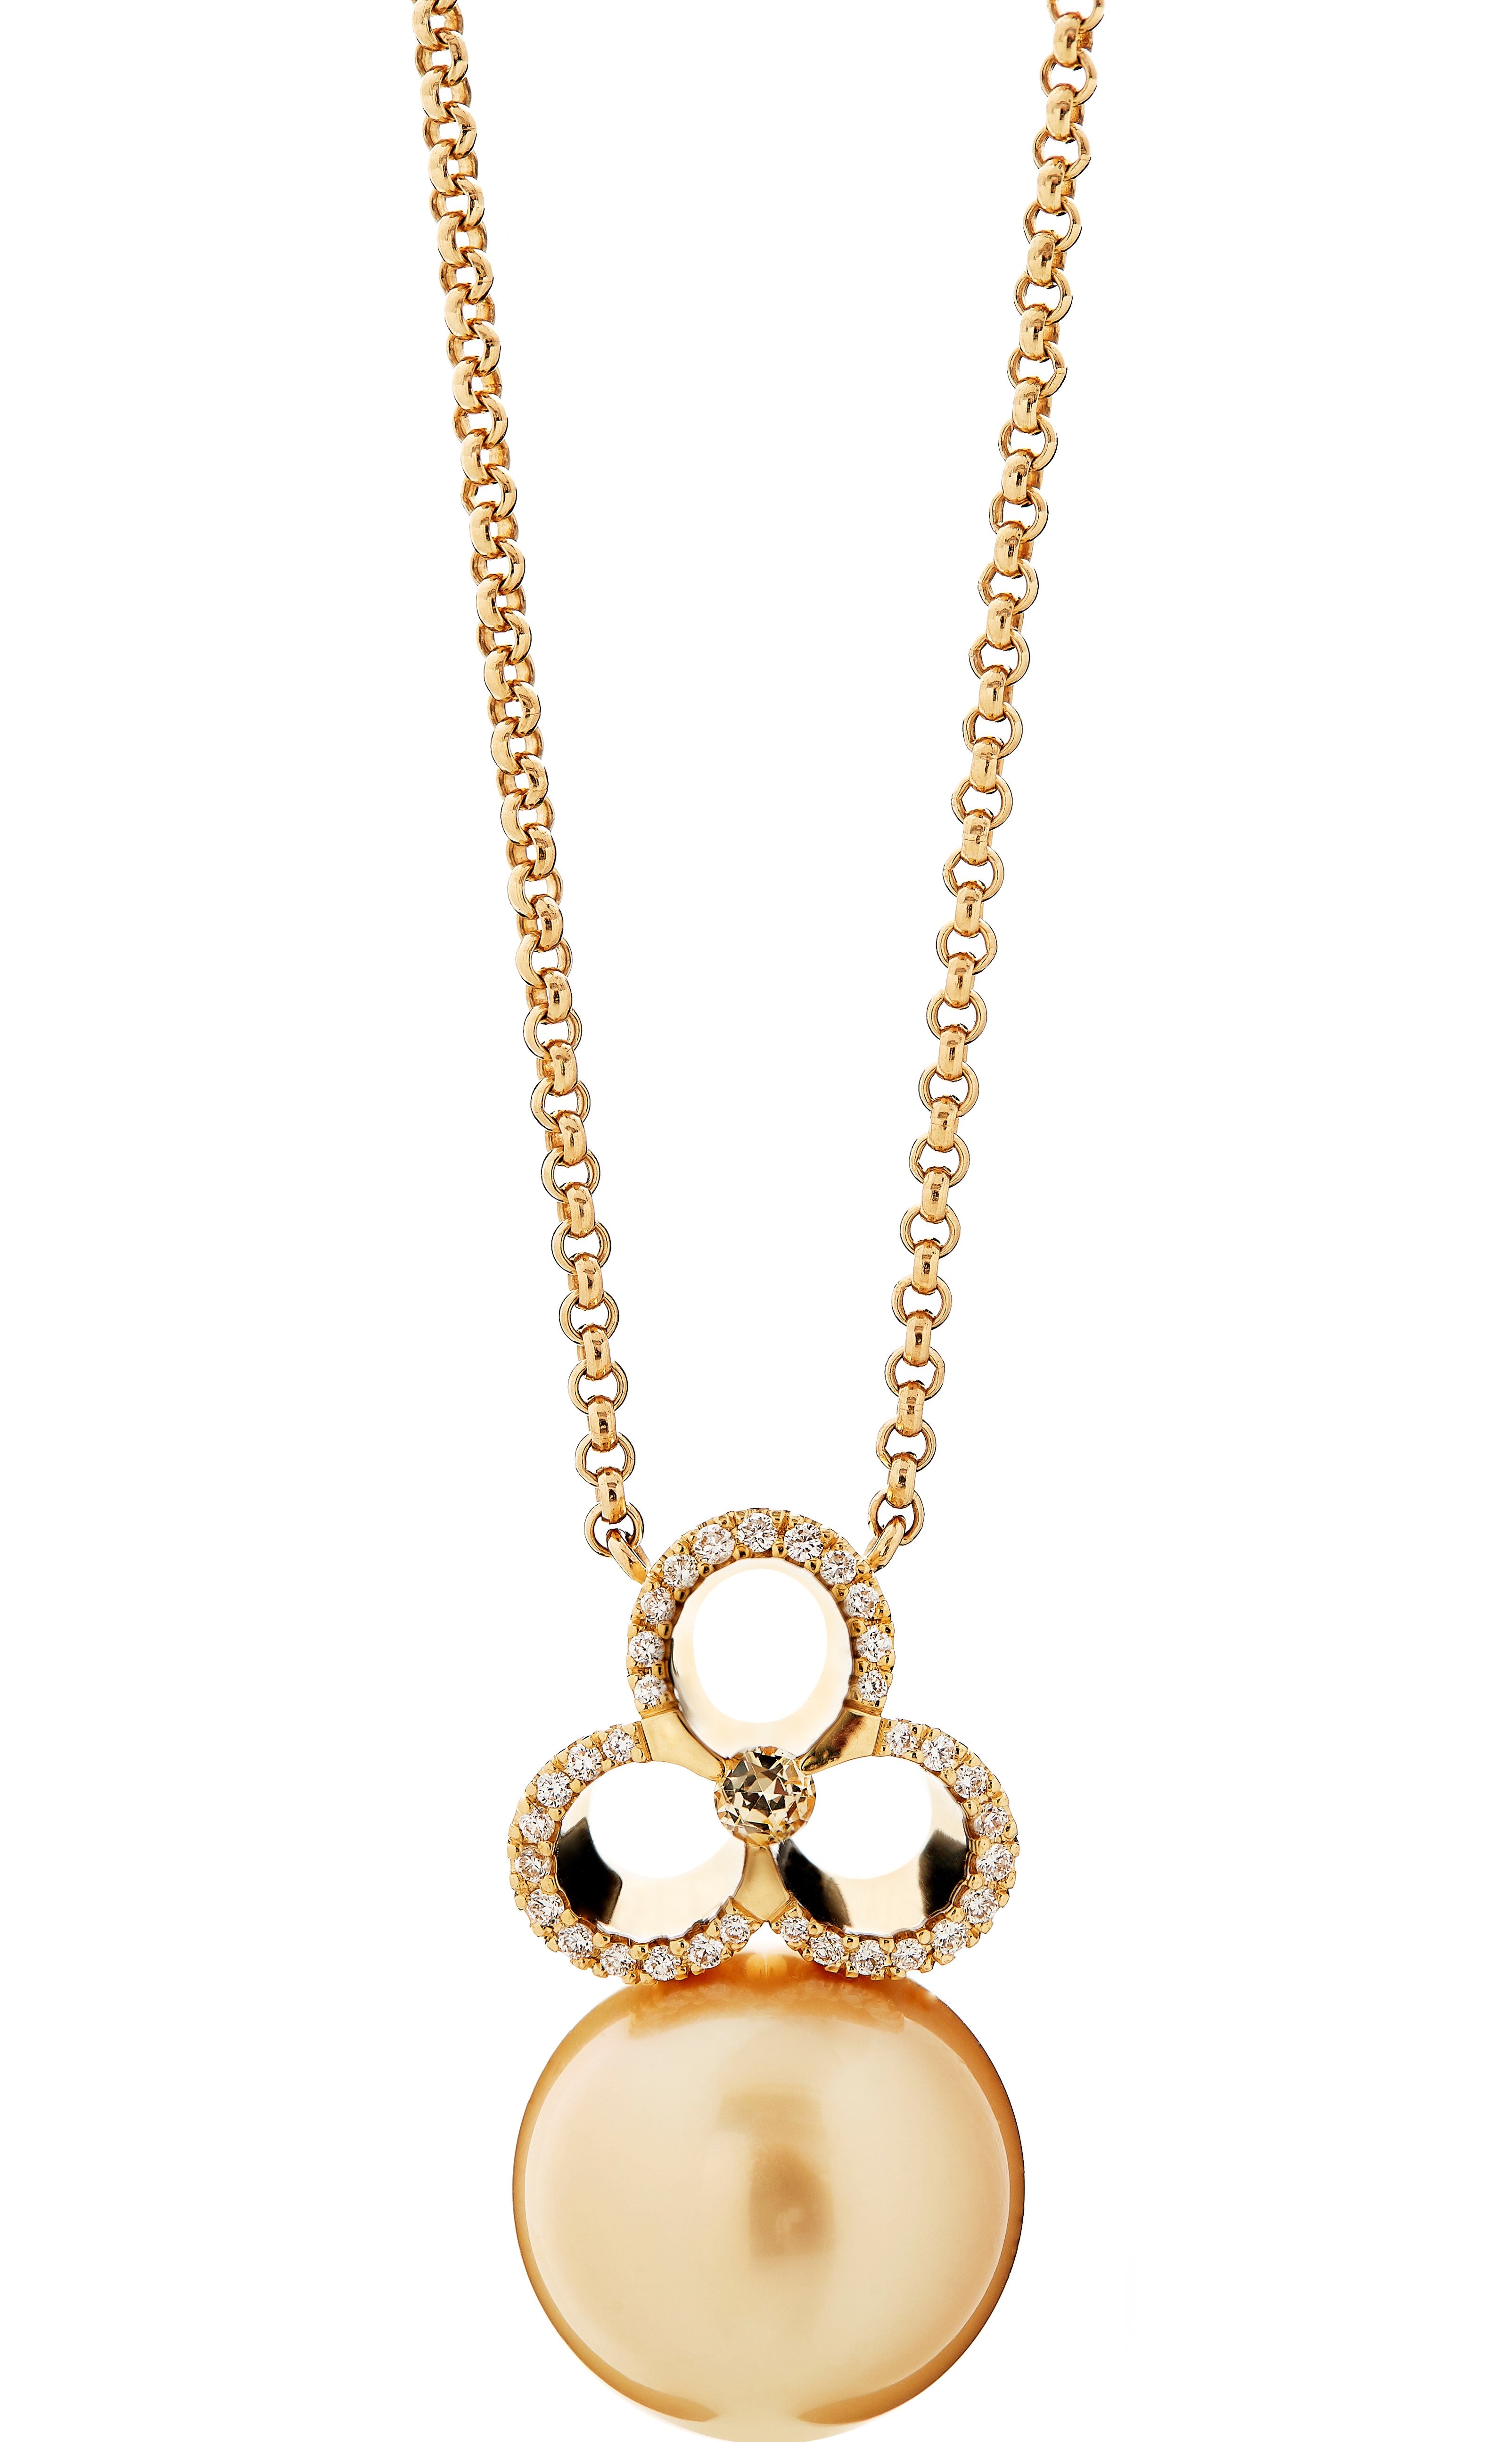 Gioia-Kollektion – Goldene Gioia-Perlenkette